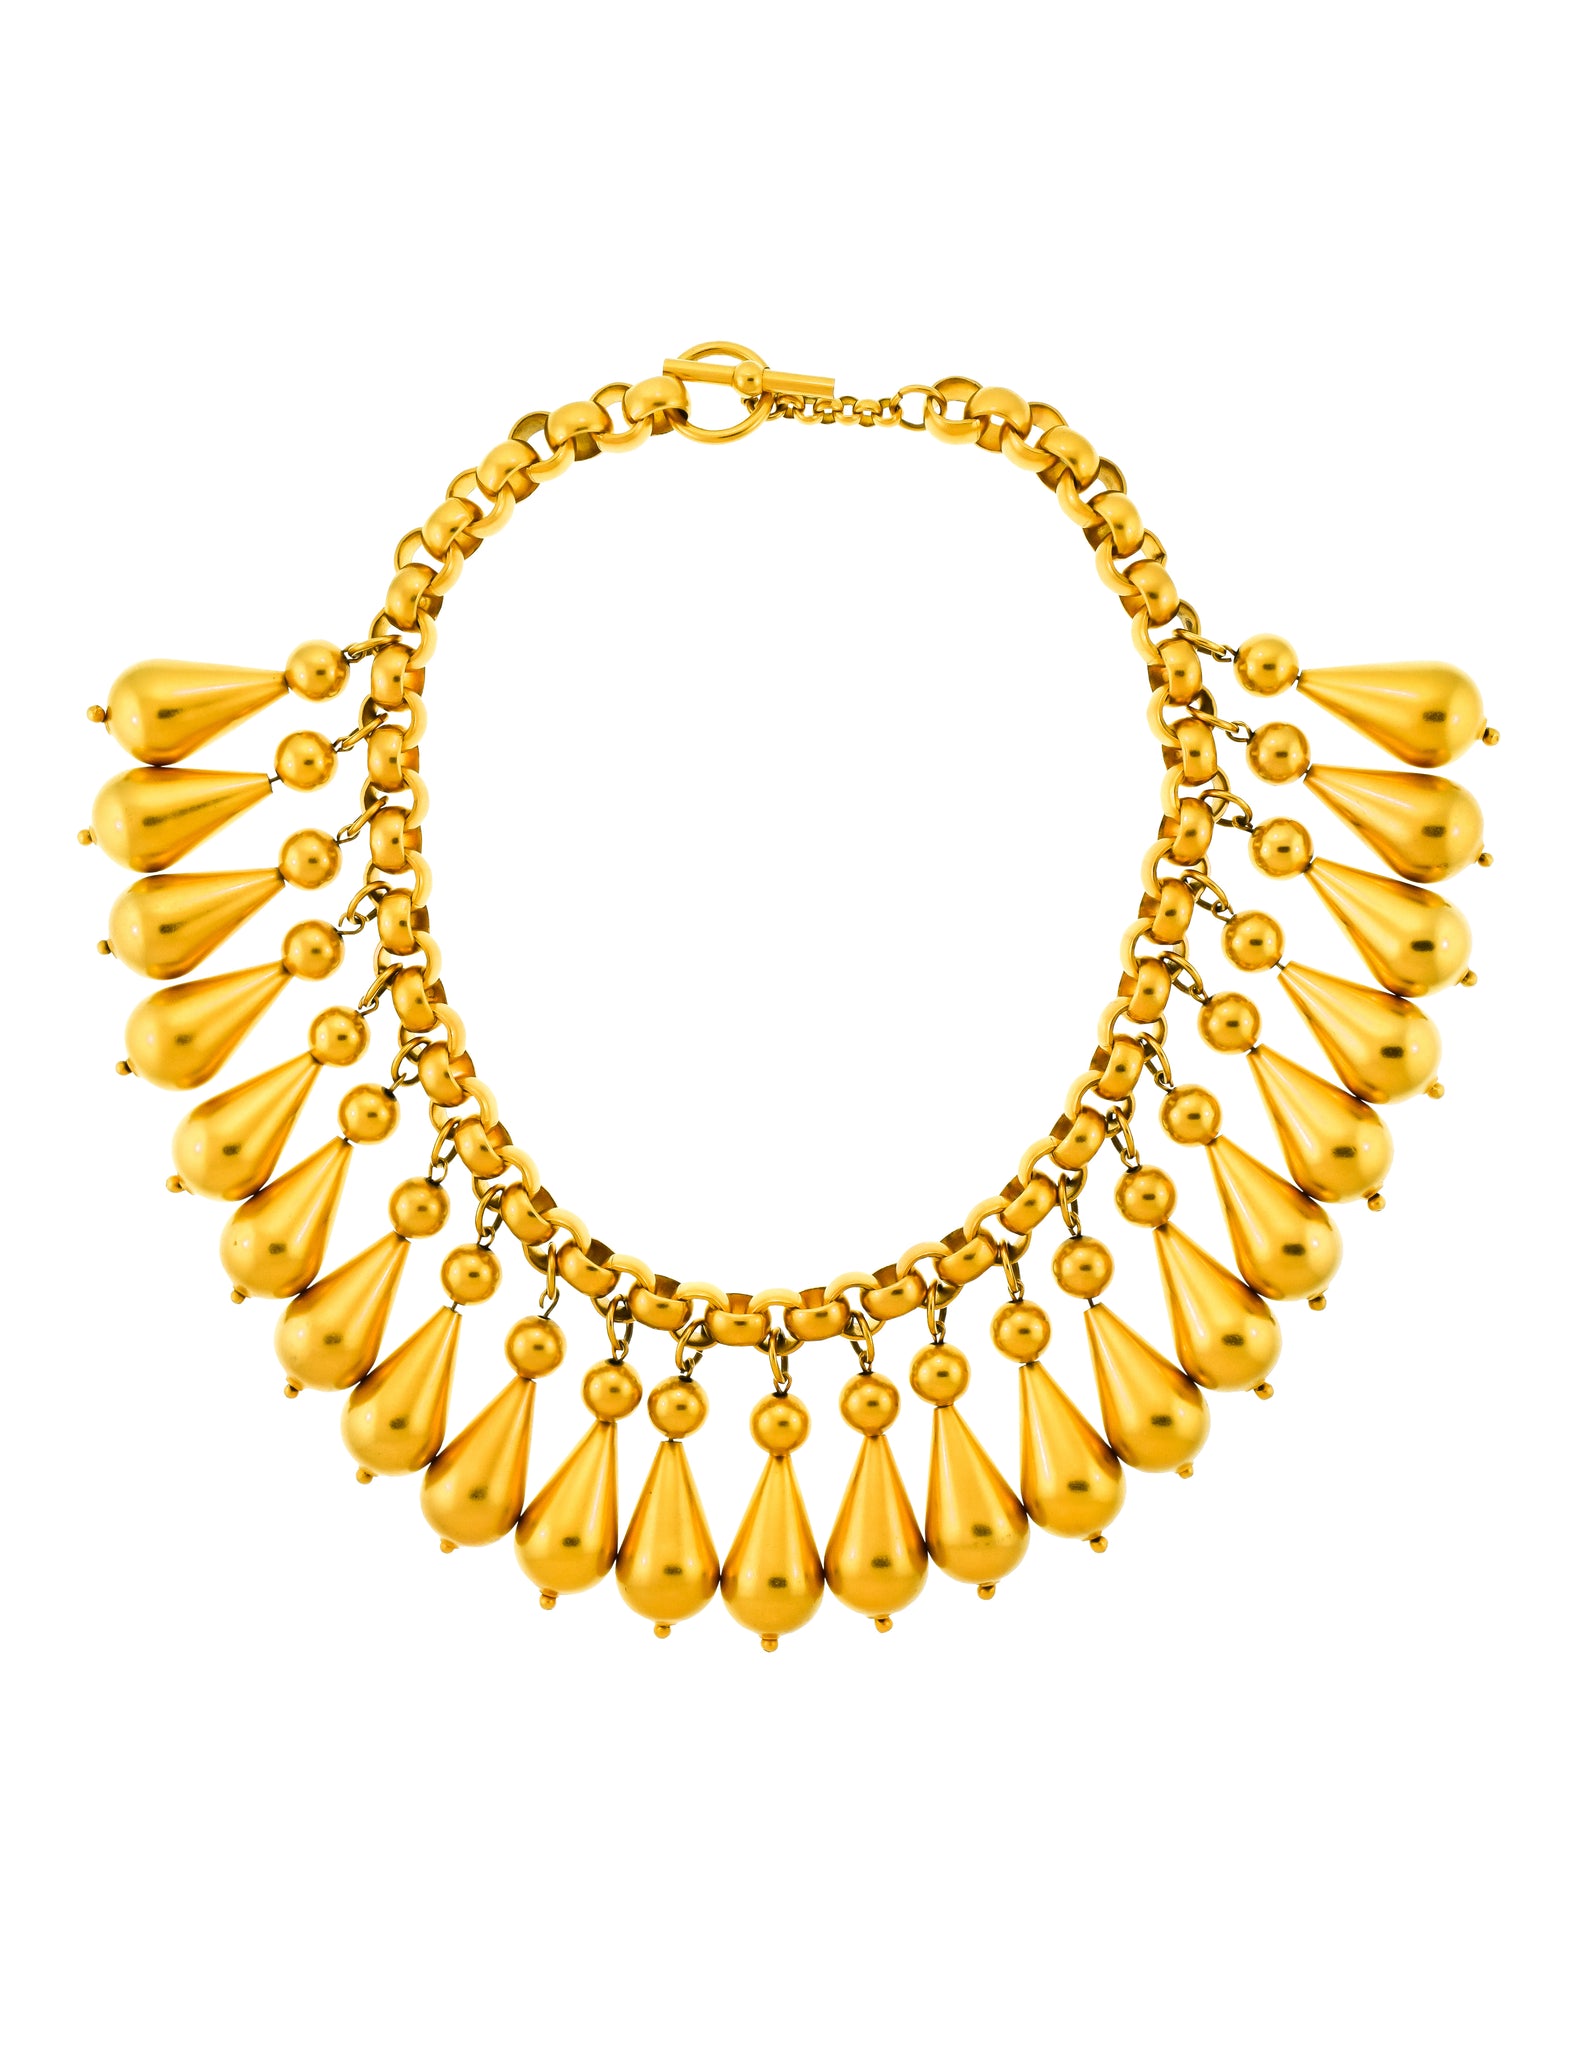 Donna Karan Robert Lee Morris Vintage Matte Gold Teardrop Necklace